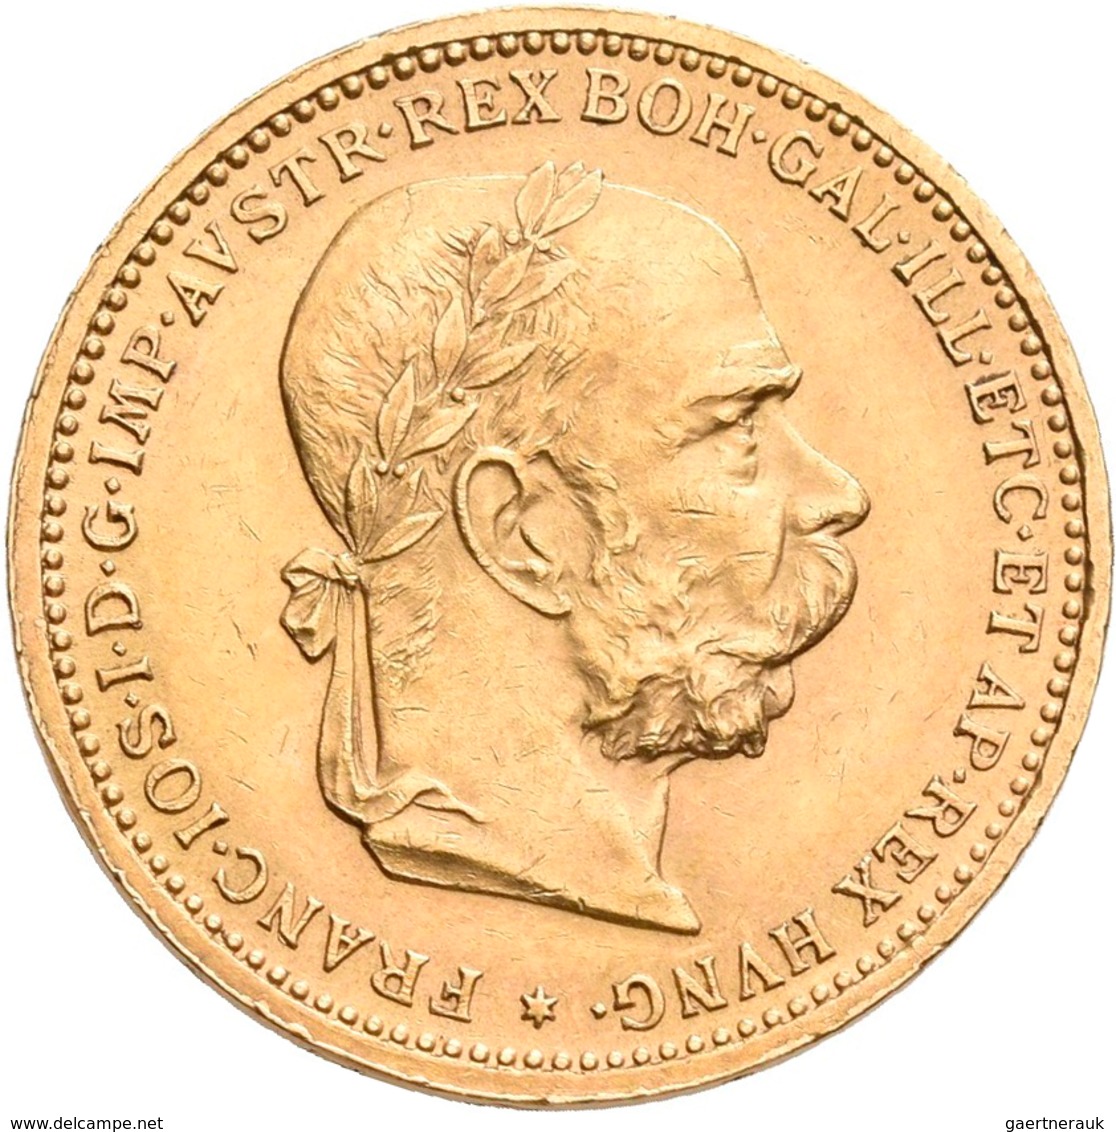 Österreich - Anlagegold: Lot 6 Goldmünzen: 3 x 10 Kronen 1897, 1908, 1911; 2 x 20 Kronen 1903, 1915;